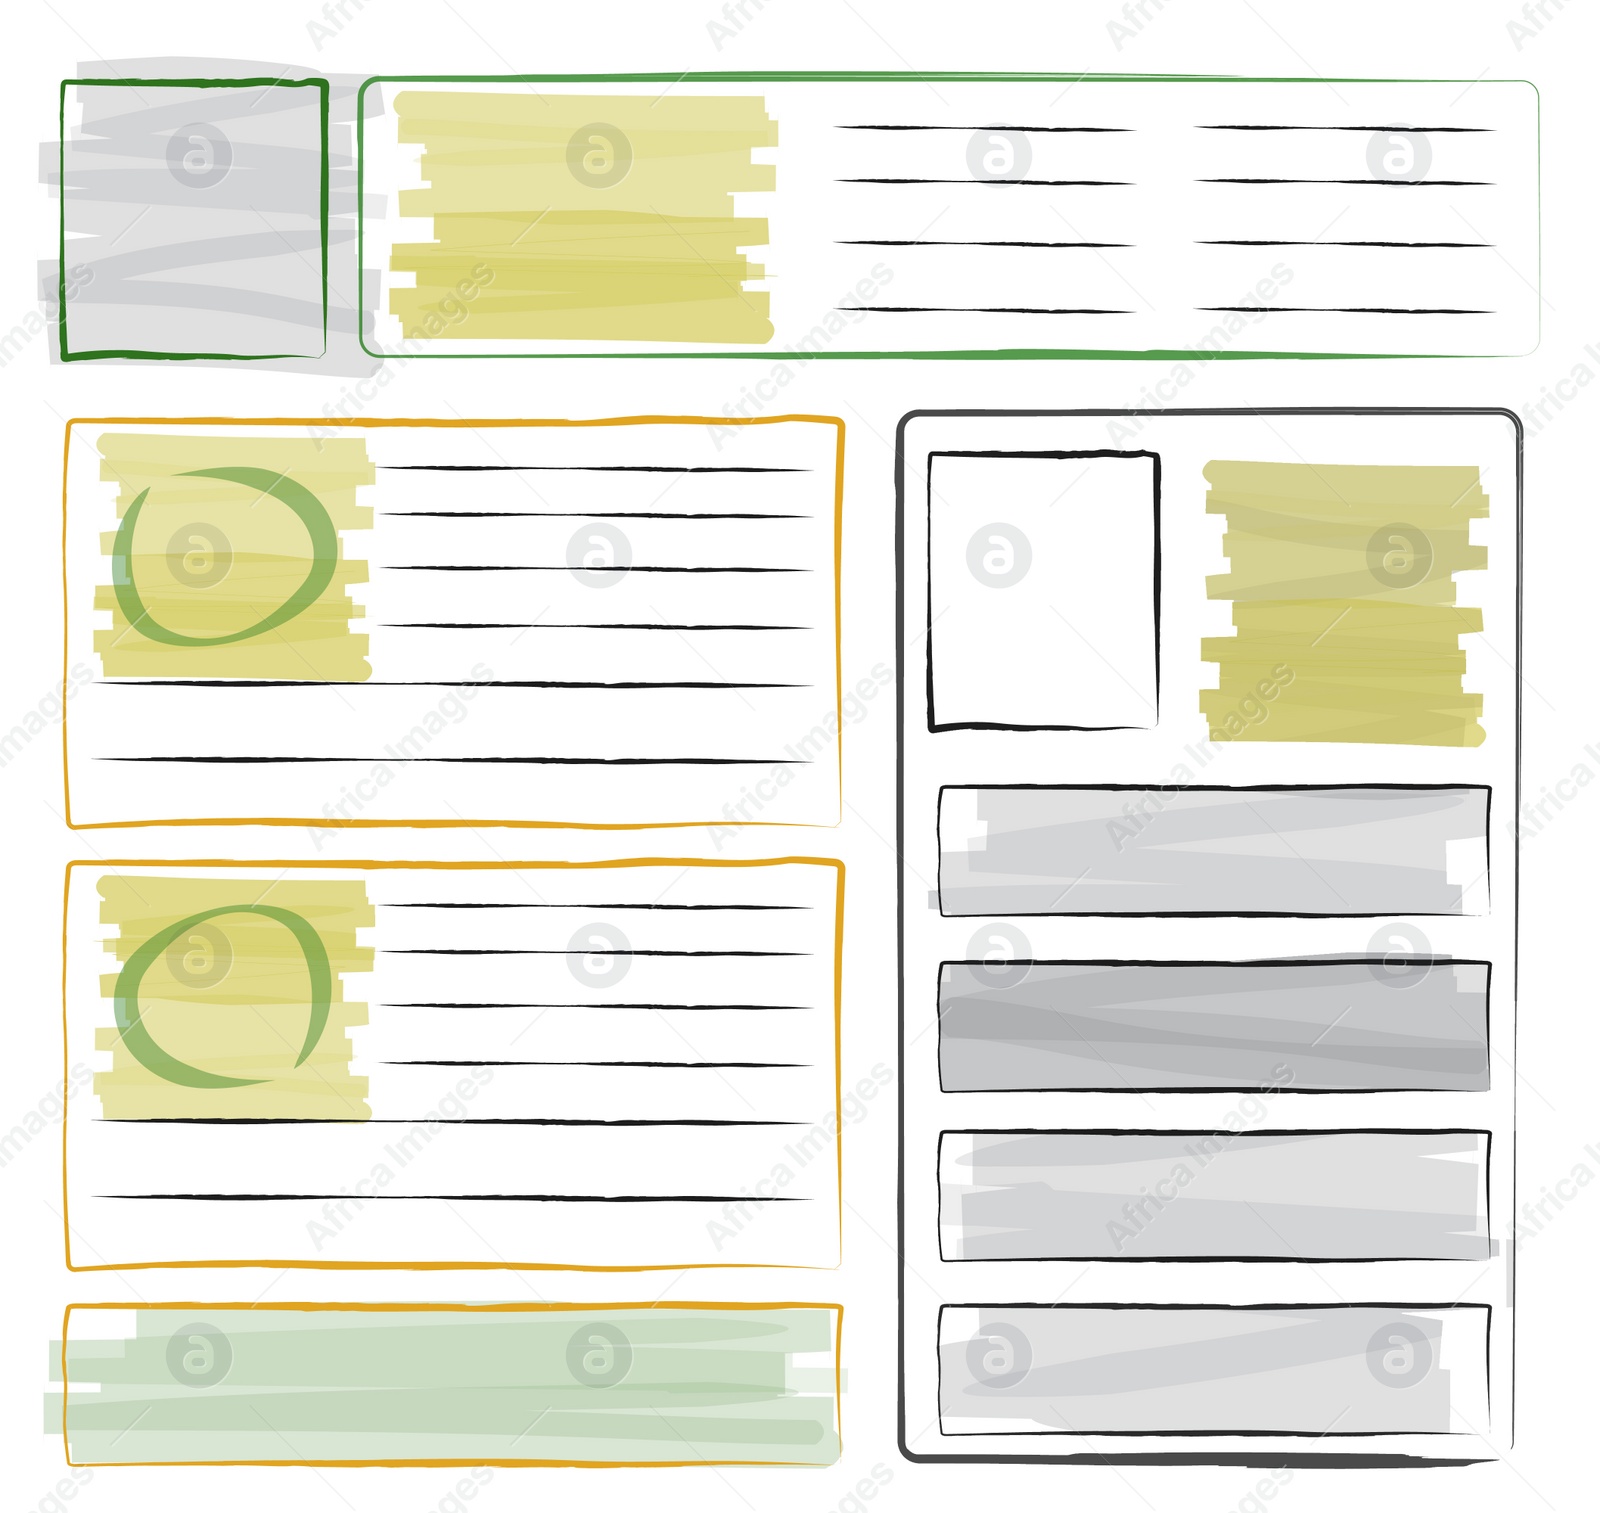 Illustration of Sketch of website planning and design, illustration